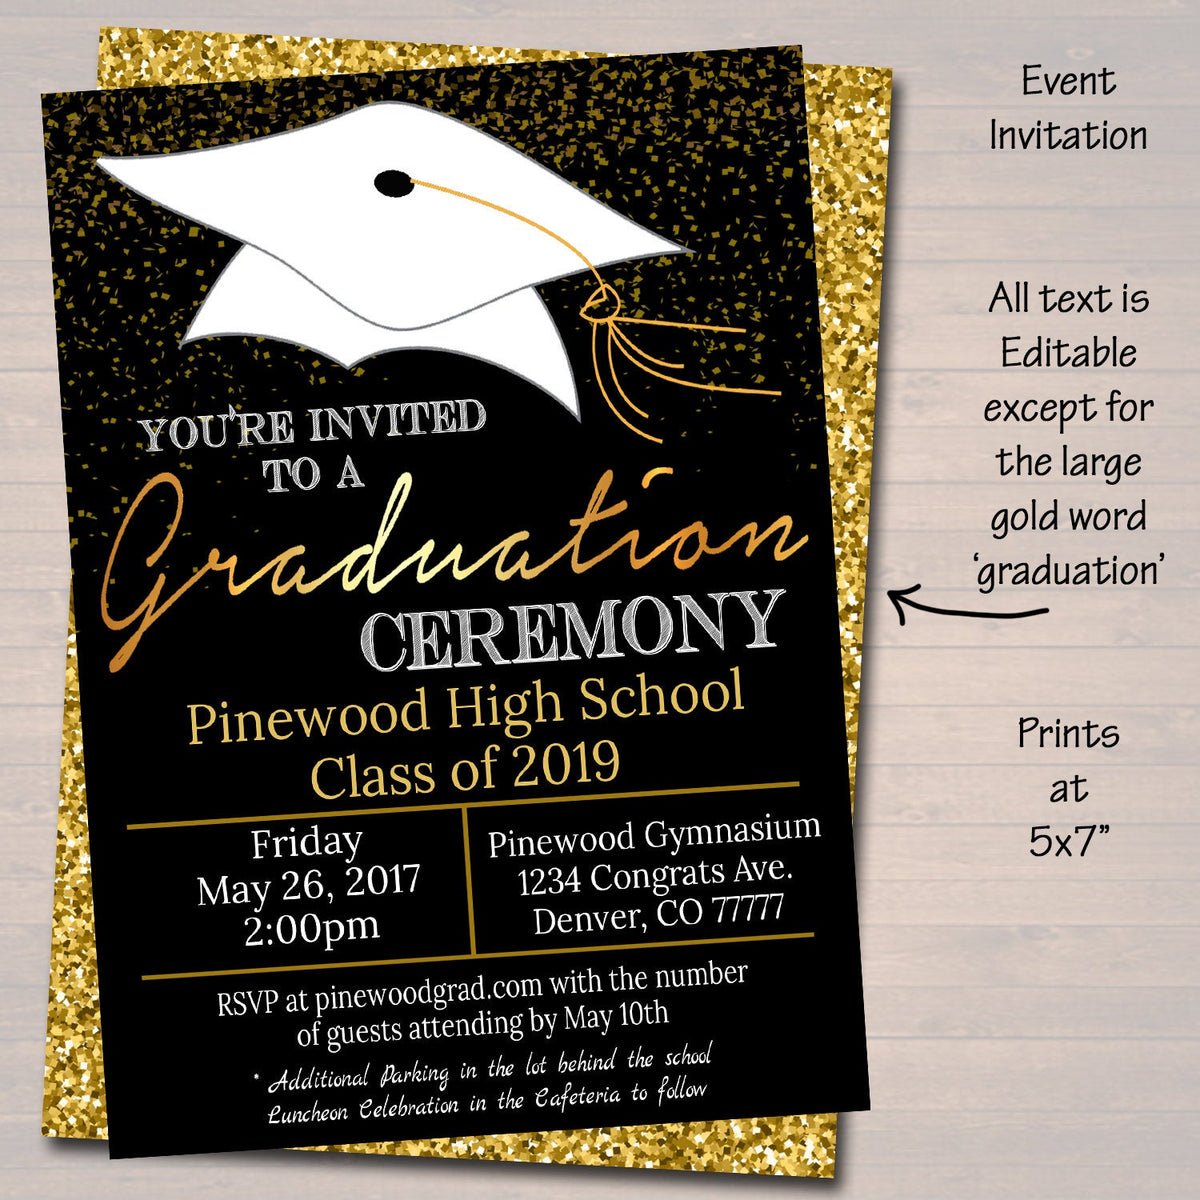 the-25-best-free-printable-graduation-invitations-ideas-on-pinterest